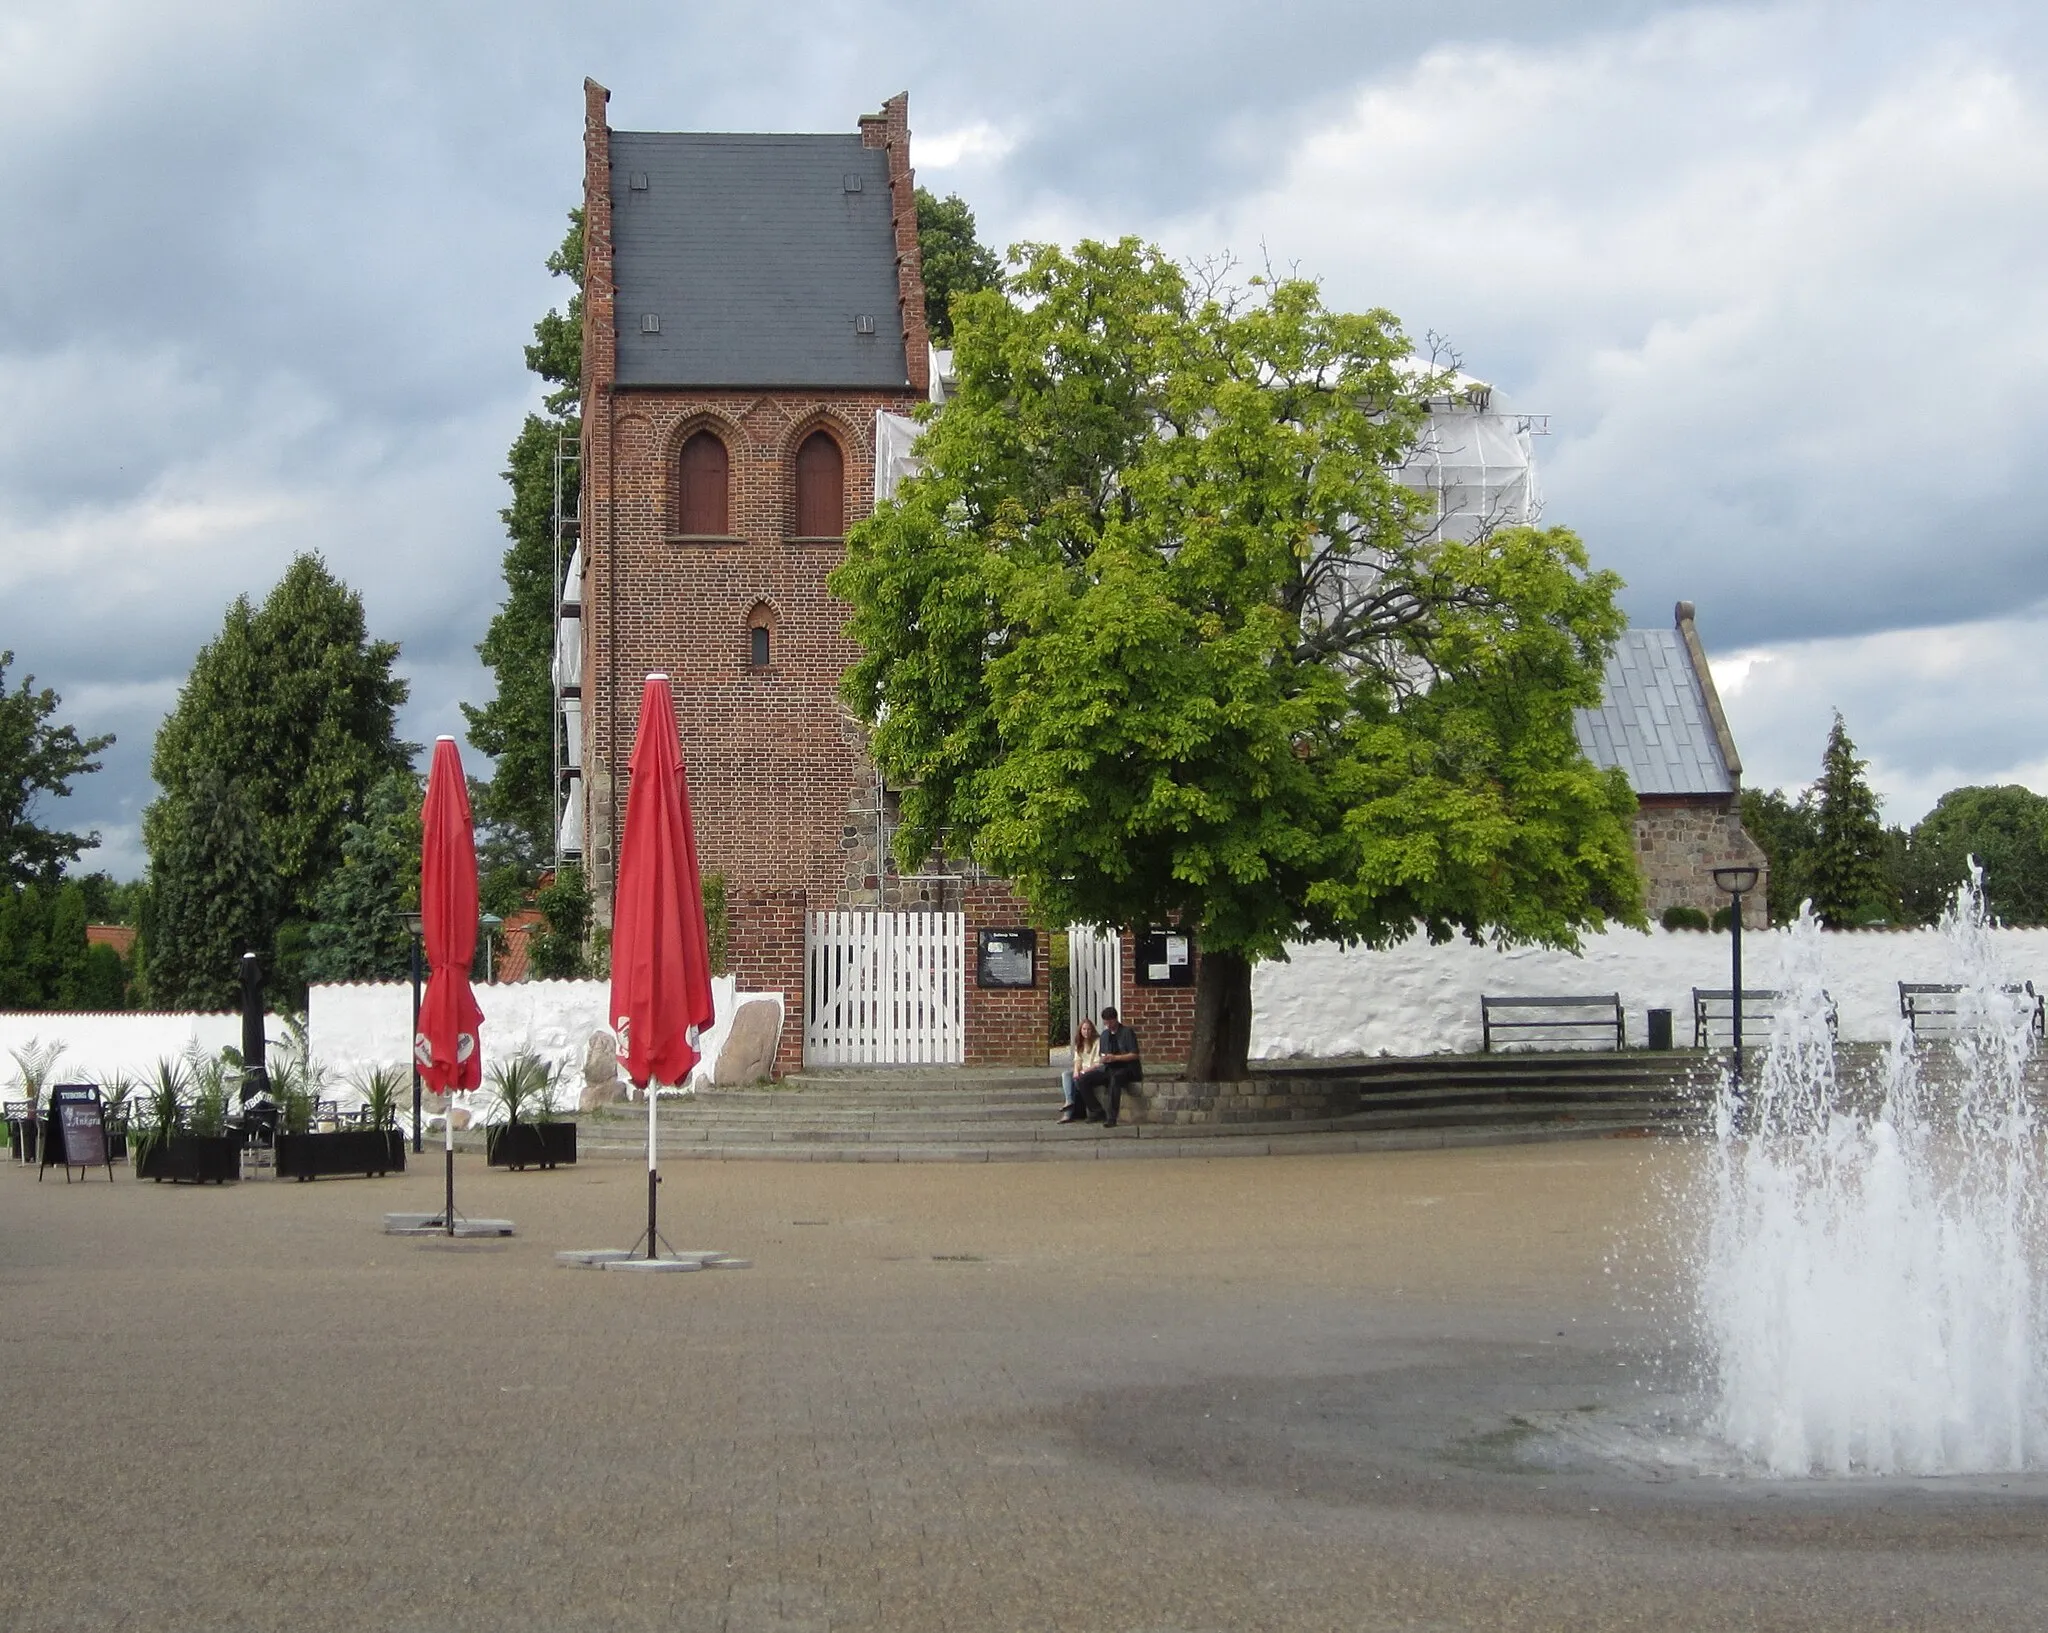 Photo showing: The church "Ballerup Kirke" seen from the pedestrian street "Centrumgaden". Ballerup is a suburb of Copenhagen.